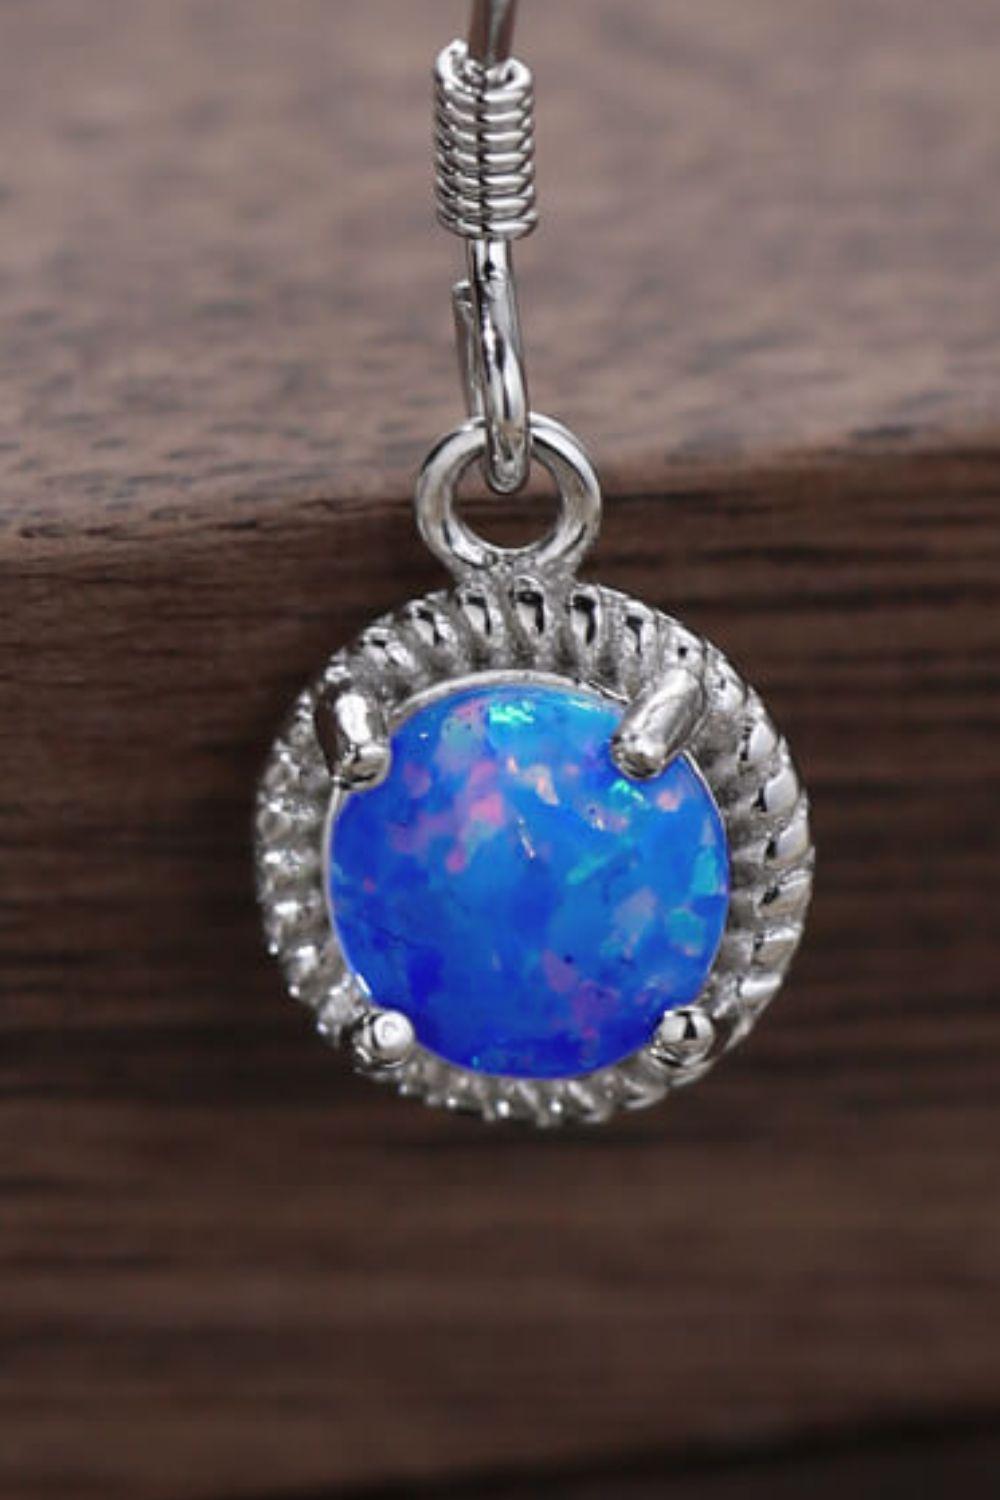 Join The Fun Opal Earrings BLUE ZONE PLANET